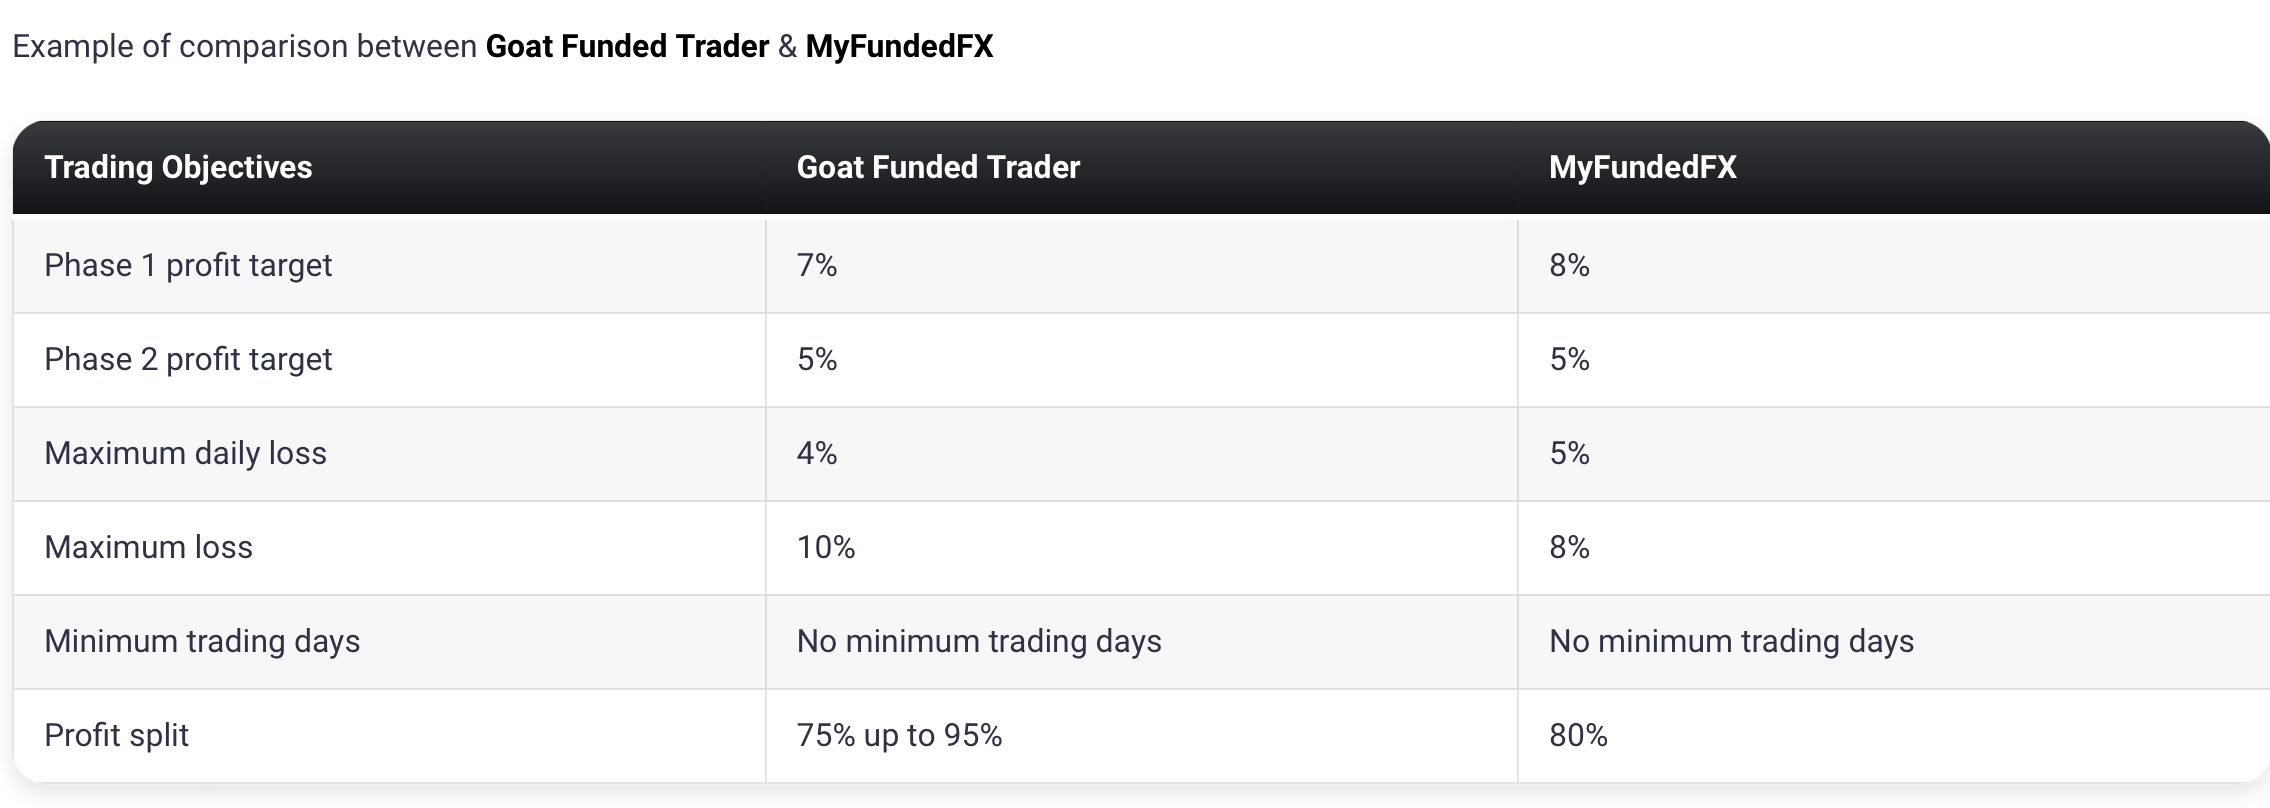 Goat Funded Trader11